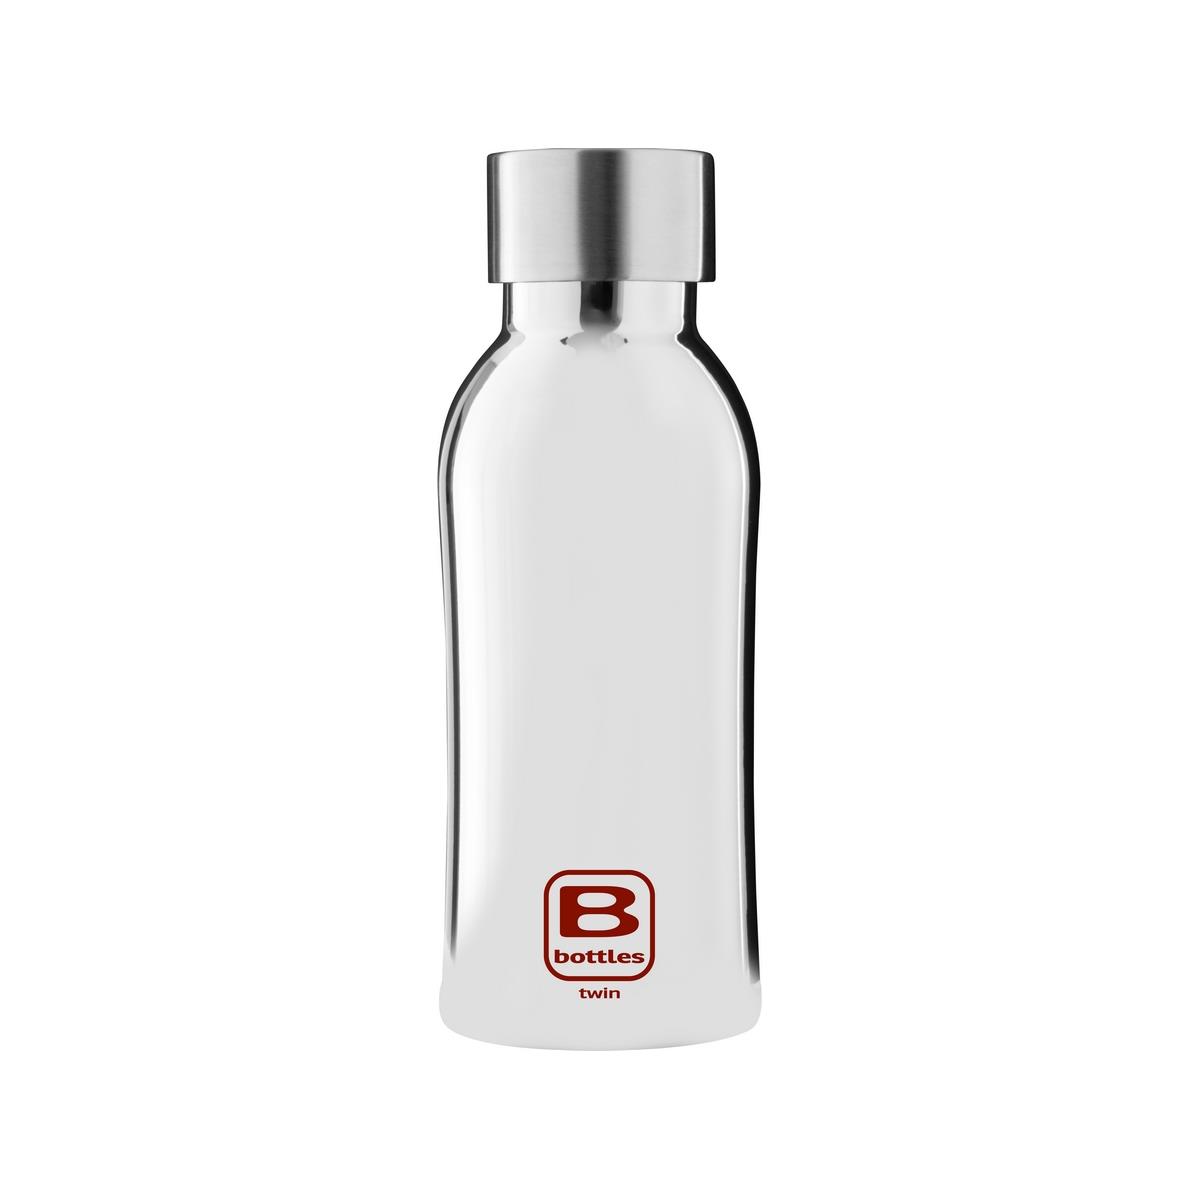 B Bottles Twin - Silver Lux - 350 ml - Bouteille thermique double paroi en acier inoxydable 18/10